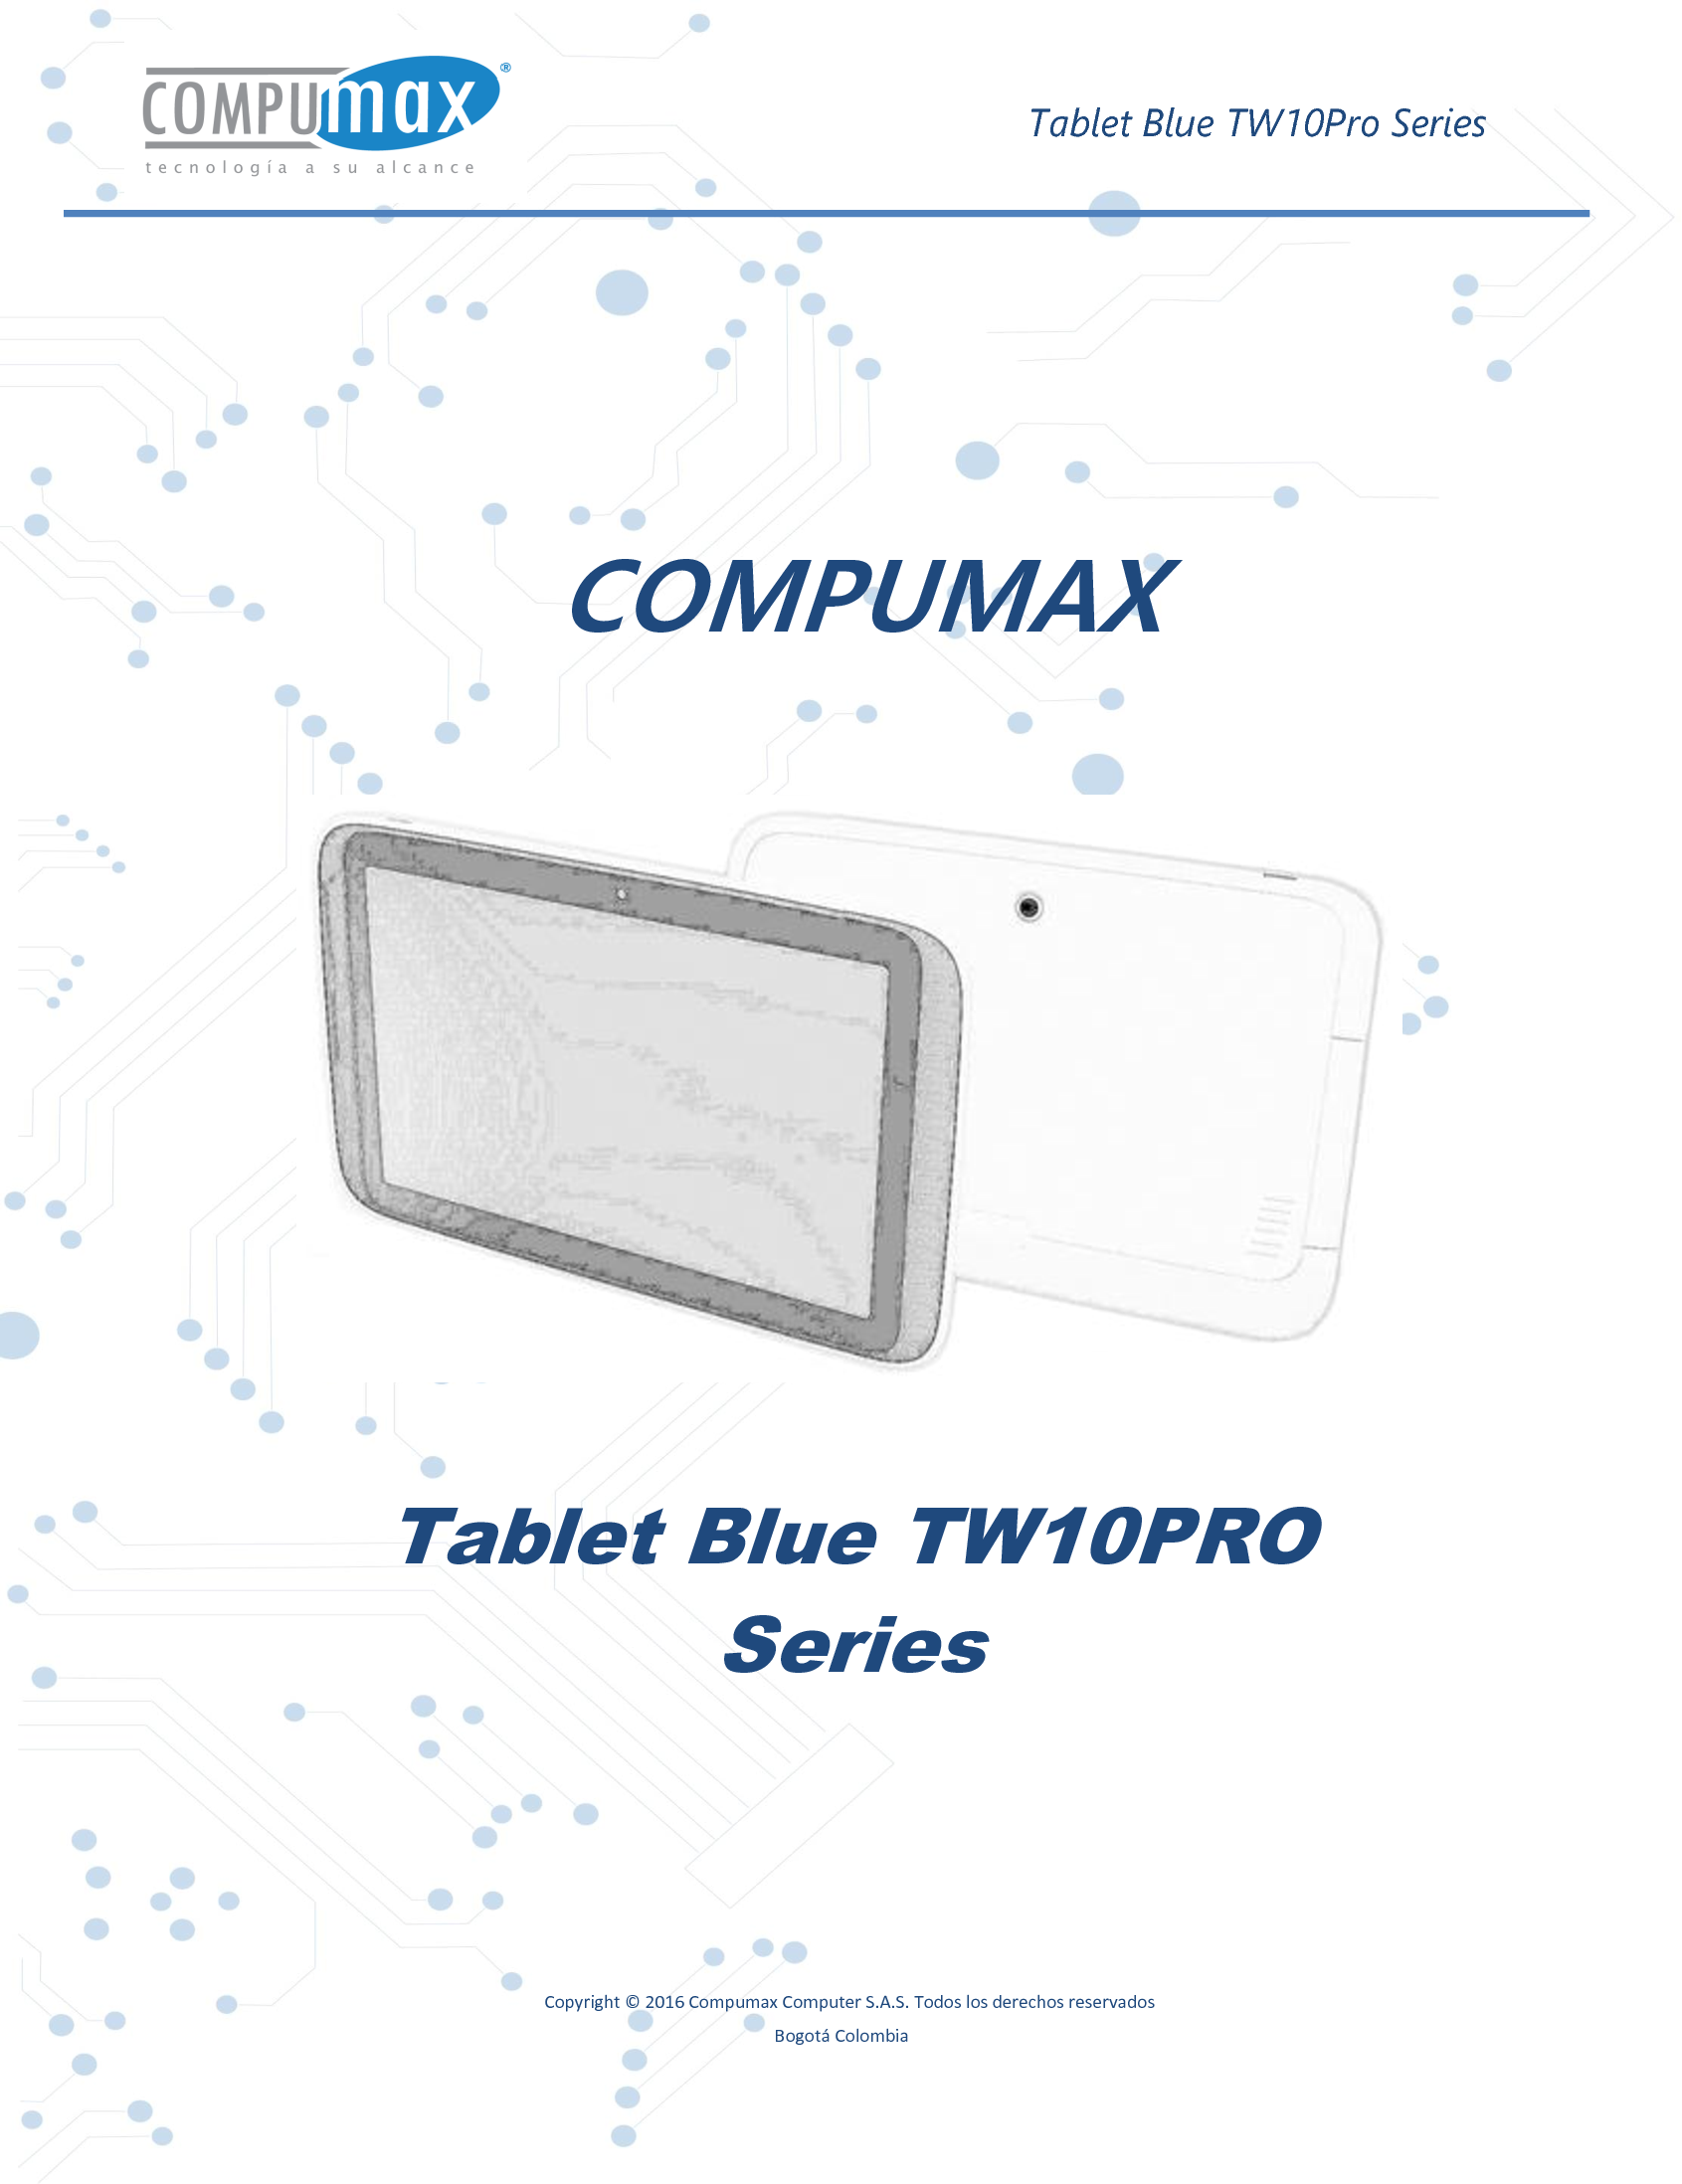     Tablet Blue TW10Pro Series    Copyright © 2016 Compumax Computer S.A.S. Todos los derechos reservados                                                                                                                    Bogotá Colombia                                                                                                                           COMPUMAX         Tablet Blue TW10PRO Series      